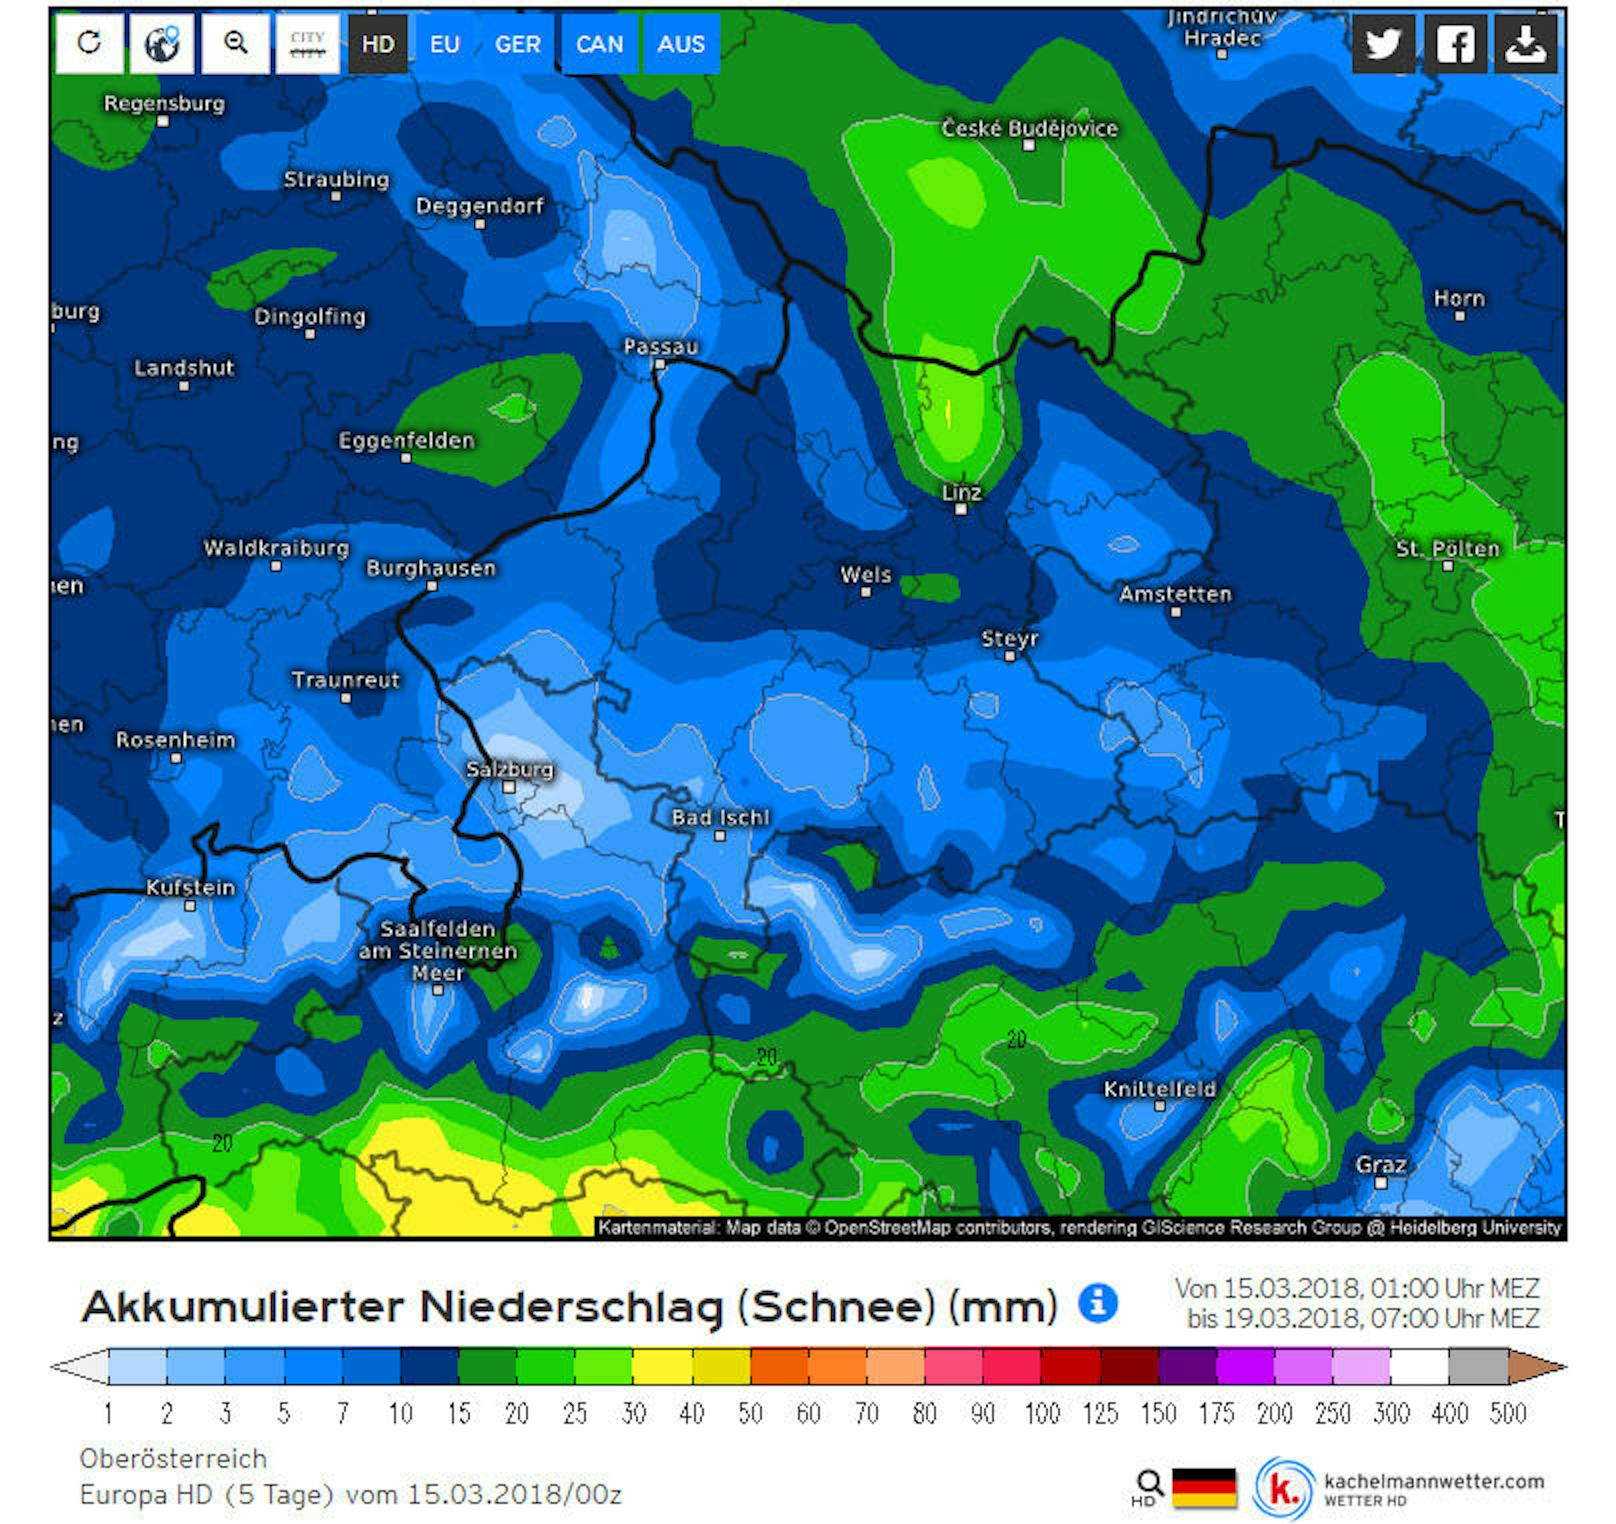 <b>Oberösterreich:</b> Niederschlagssumme (Schnee) in Millimeter im Zeitraum Donnerstag 15. bis Montag 19. März 2018.